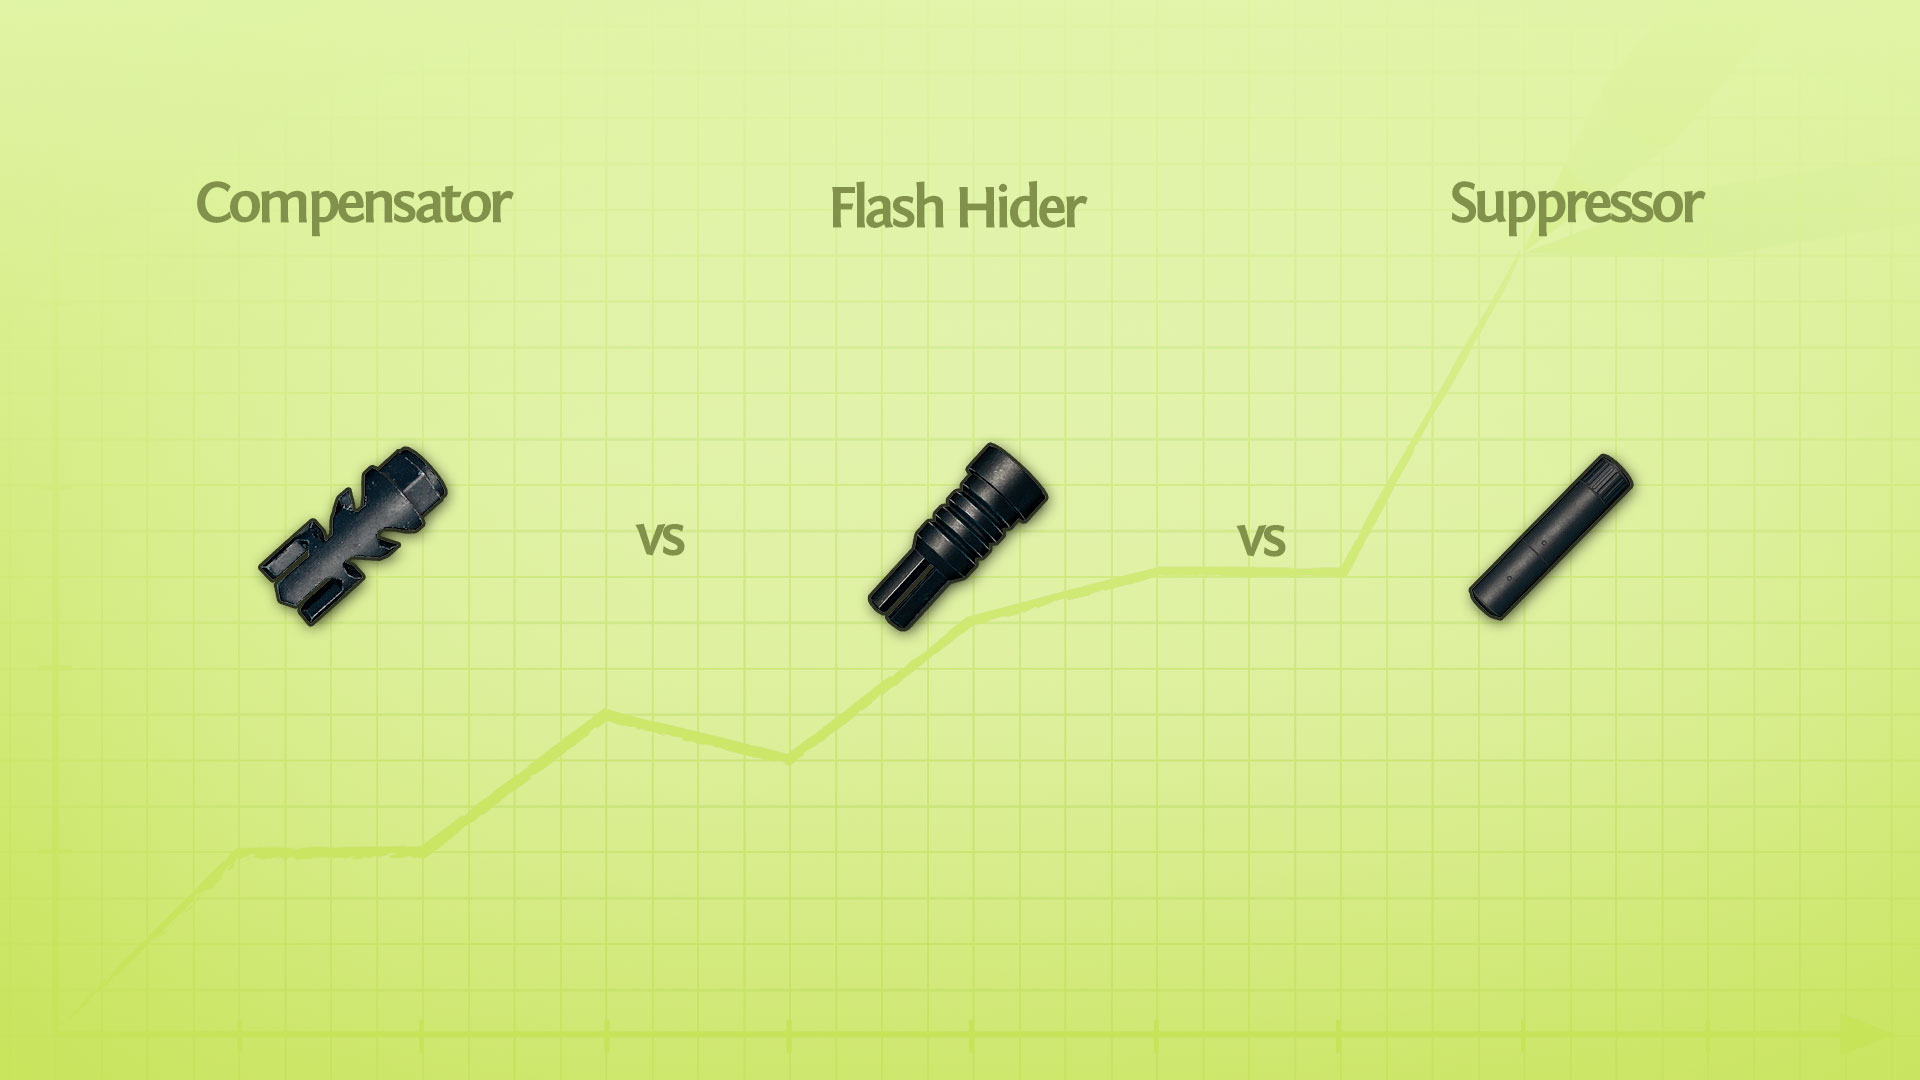 Compensator vs Flash Hider vs Suppressor